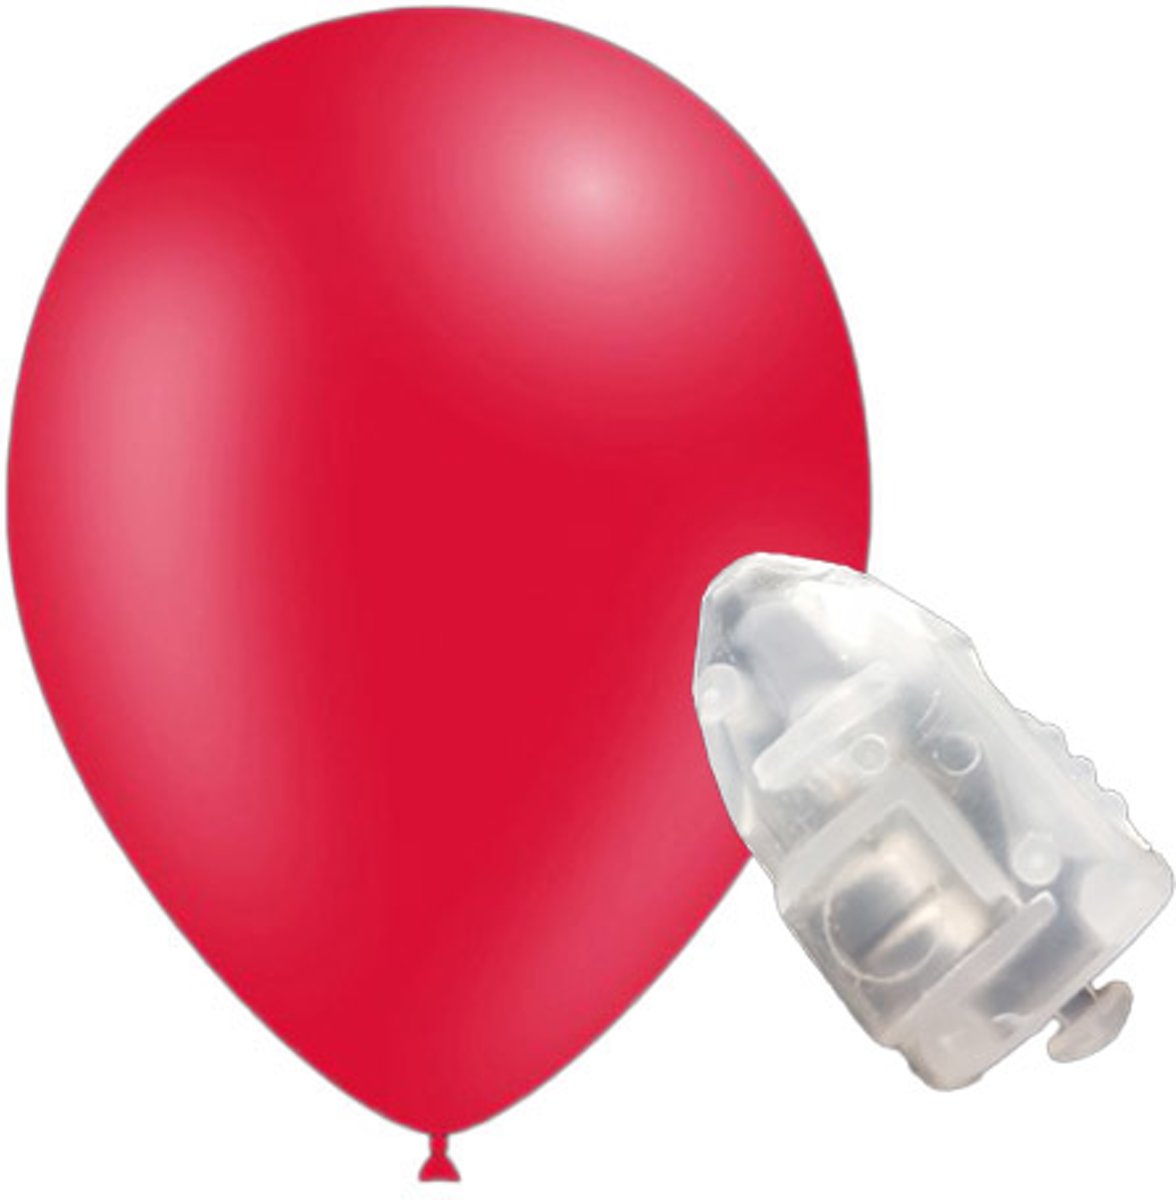 5 stuks ledverlichte Feestballonnen rood 26 cm pastel met losse LED-lampjes